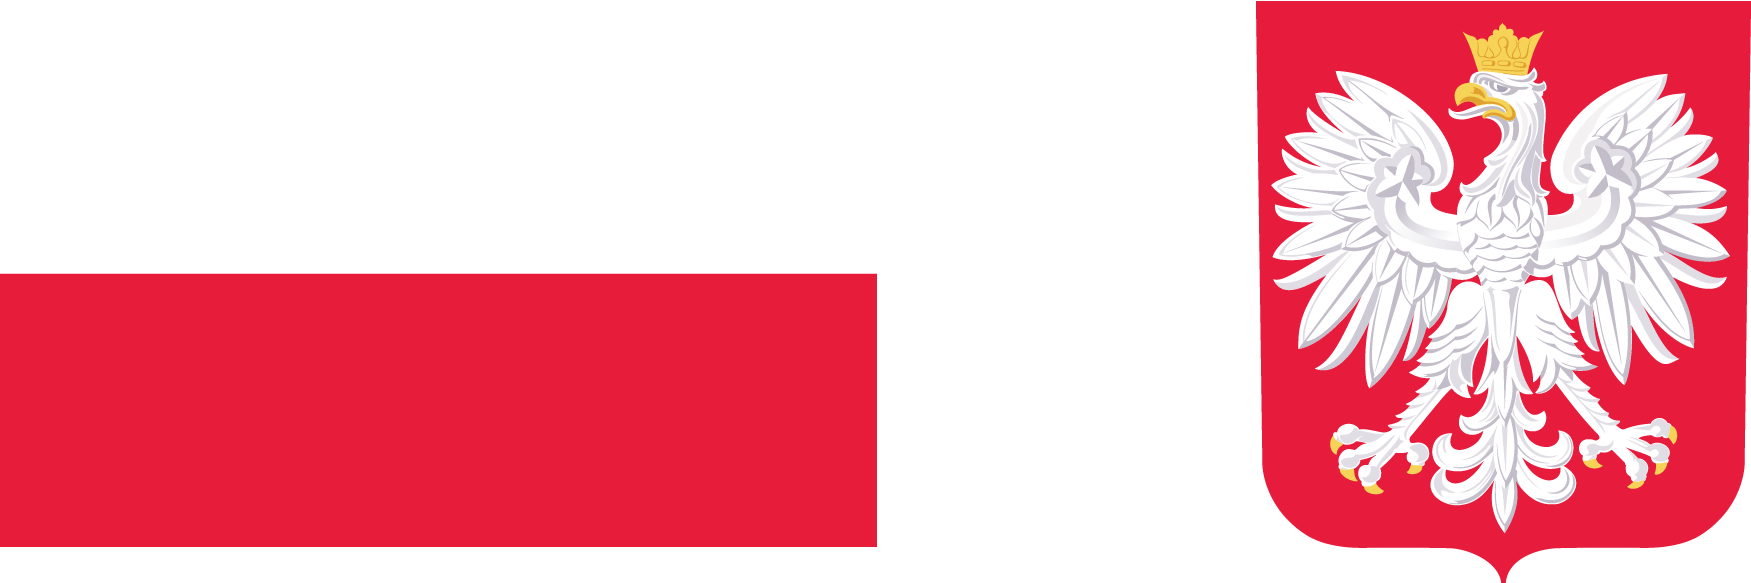 flaga i godło polski nagłówek